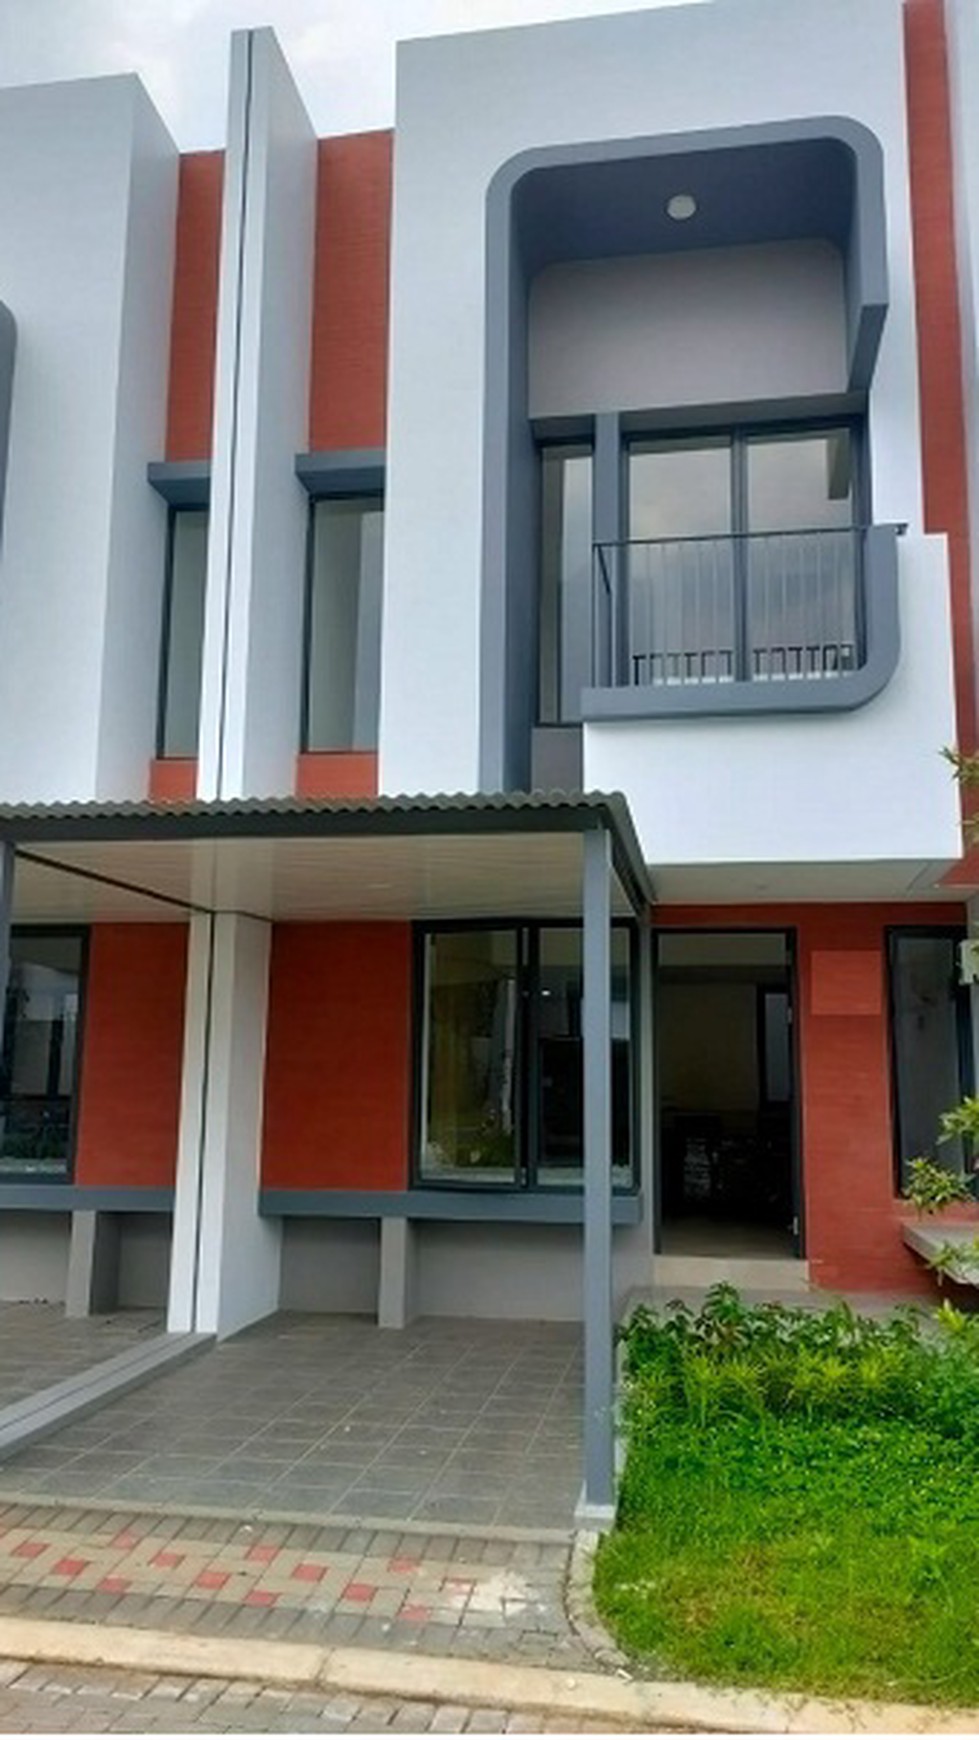 Disewakan rumah hunian minimalis modern di cluster freja BSD Tangerang